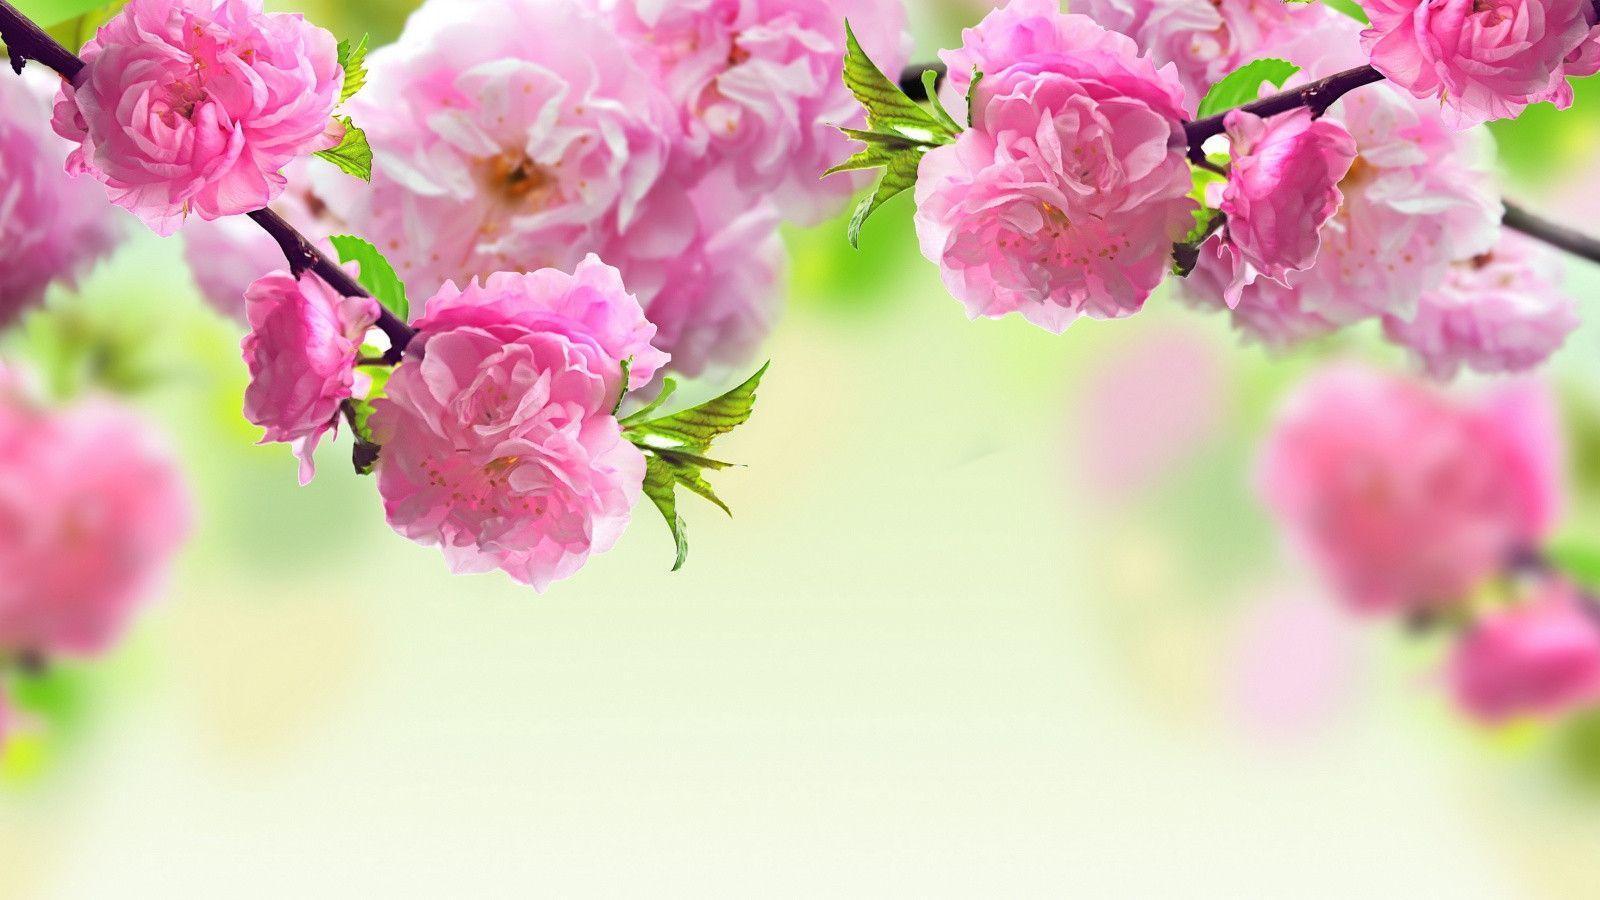 Sự đa dạng cũng như vẻ đẹp của các loài hoa trong mùa xuân được bắt đầu bằng những bức hình nền sẽ đưa bạn đến một thế giới hoa tươi sáng. Những bông hoa đầy sắc màu với hình ảnh sống động và tinh tế sẽ giúp bạn tận hưởng không khí mùa xuân ngay trong màn hình thiết bị của mình.